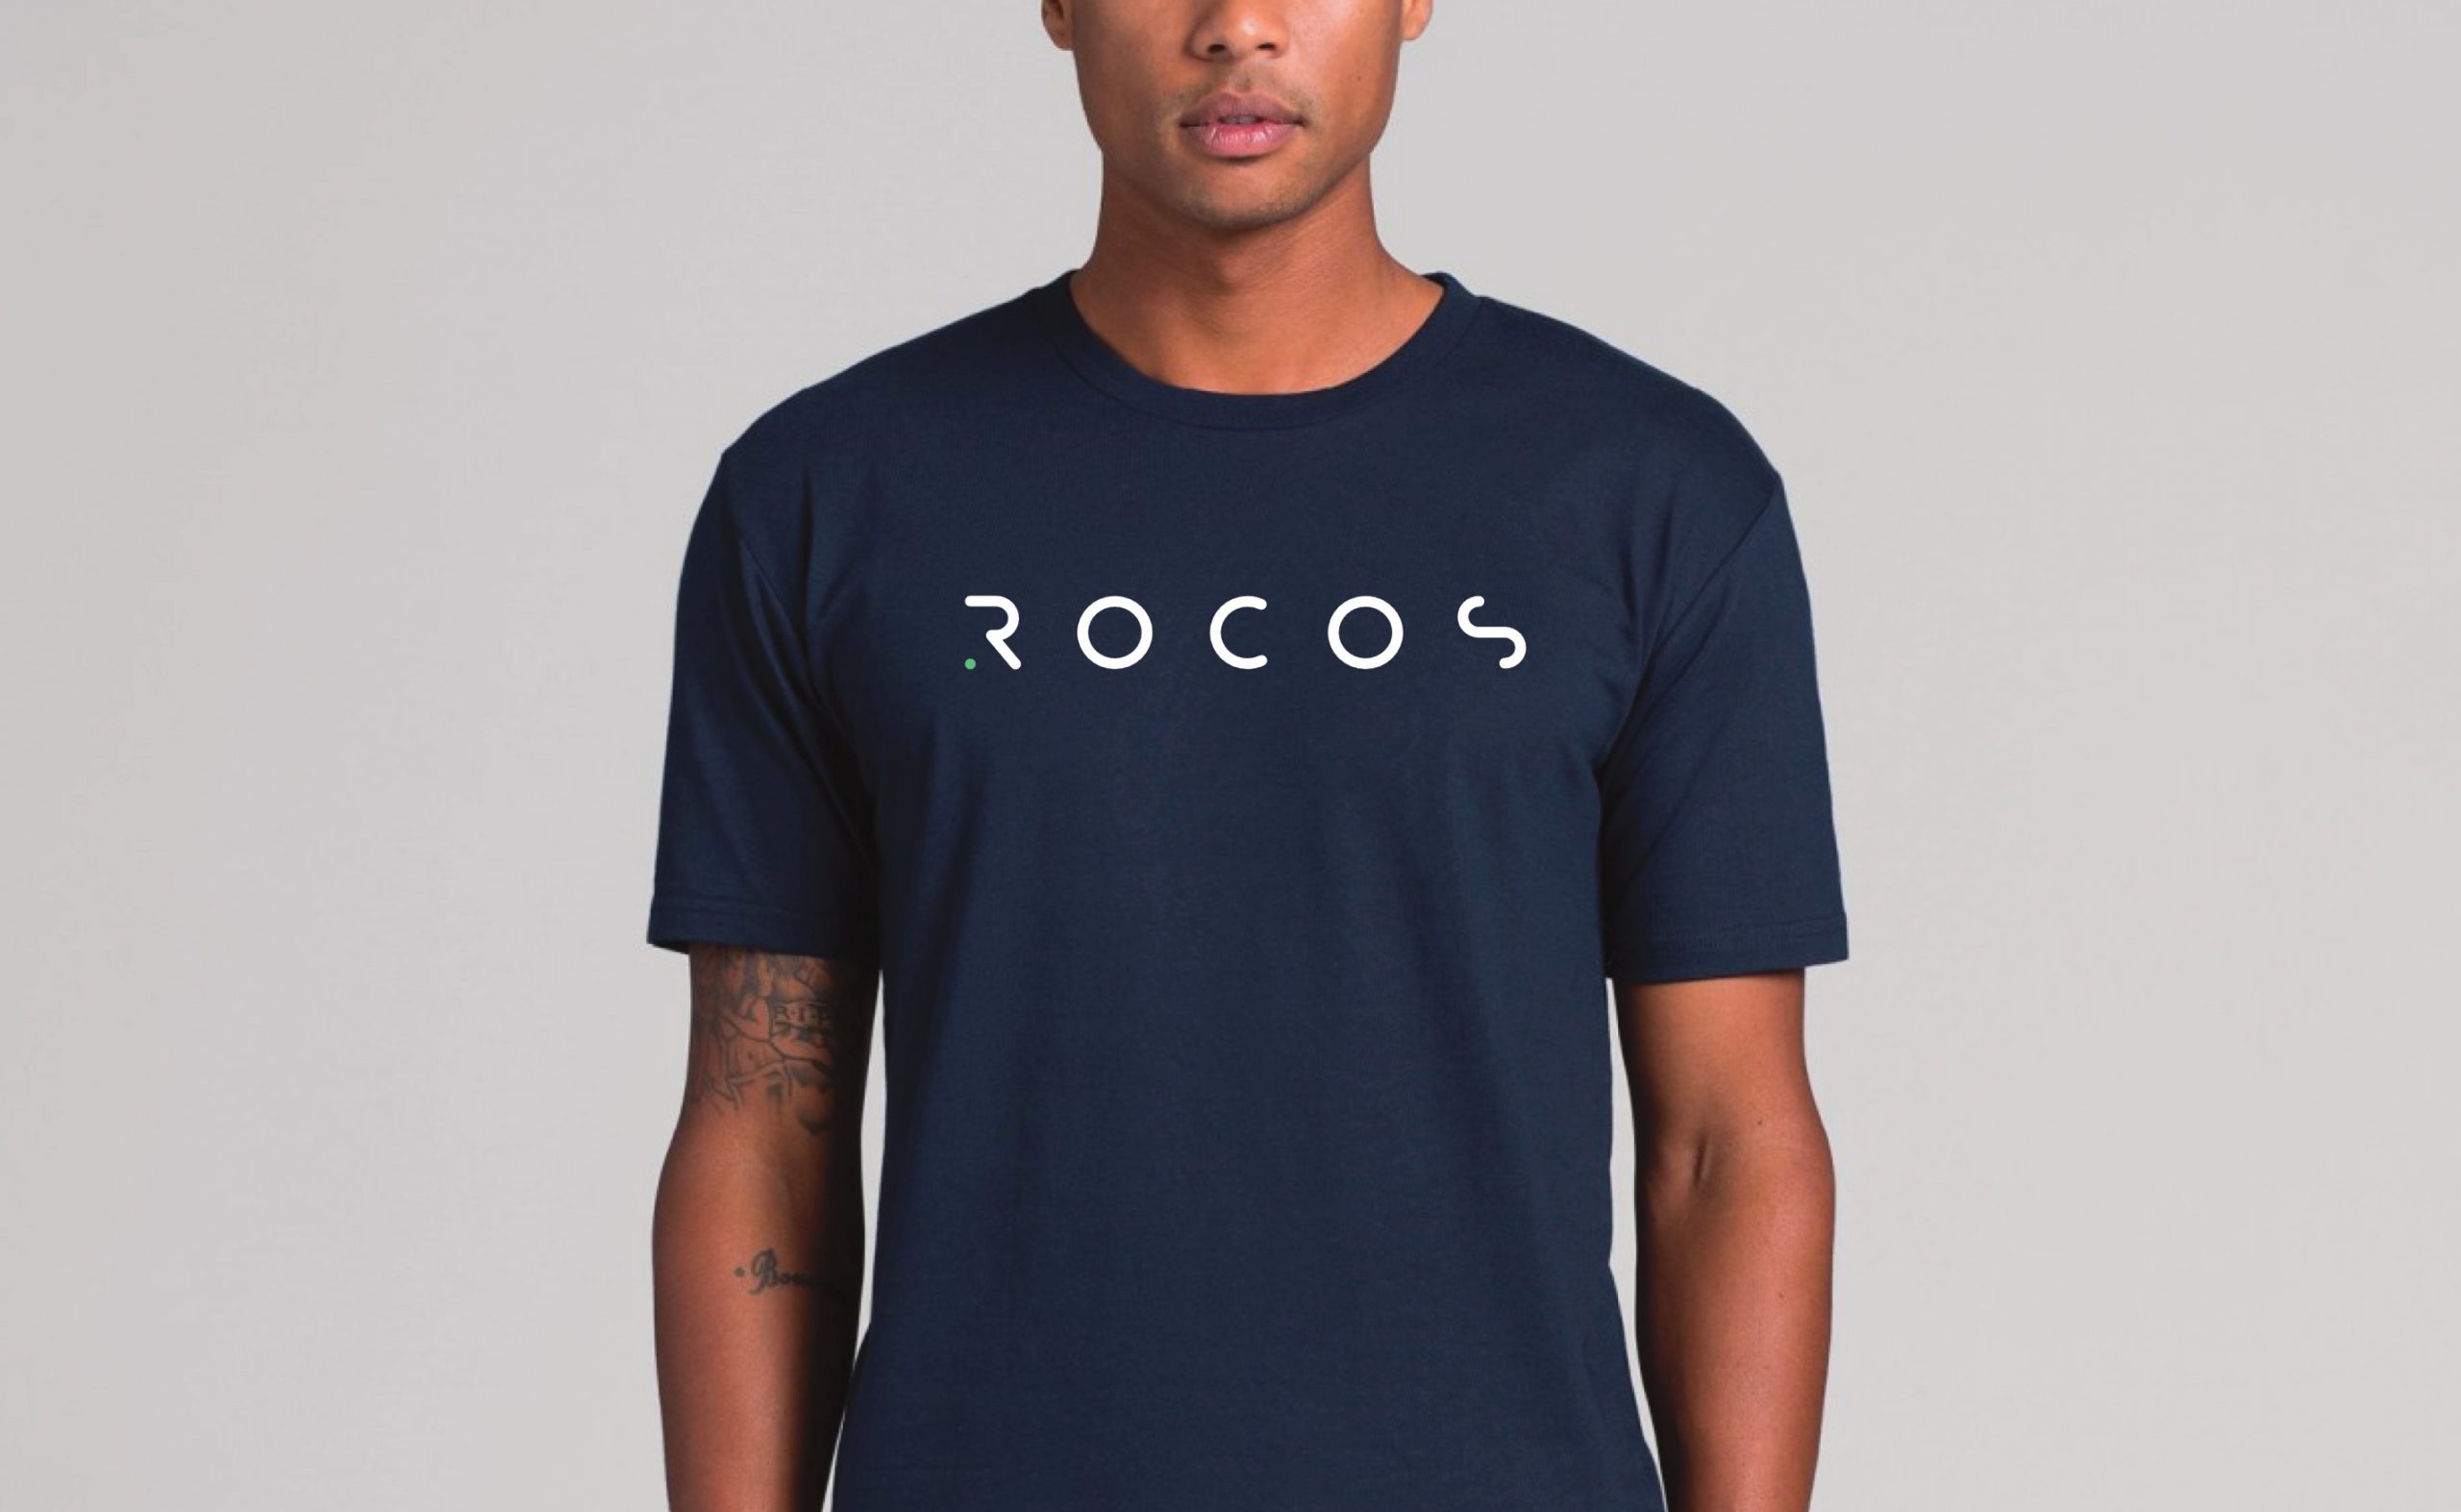 rocos_tee_design